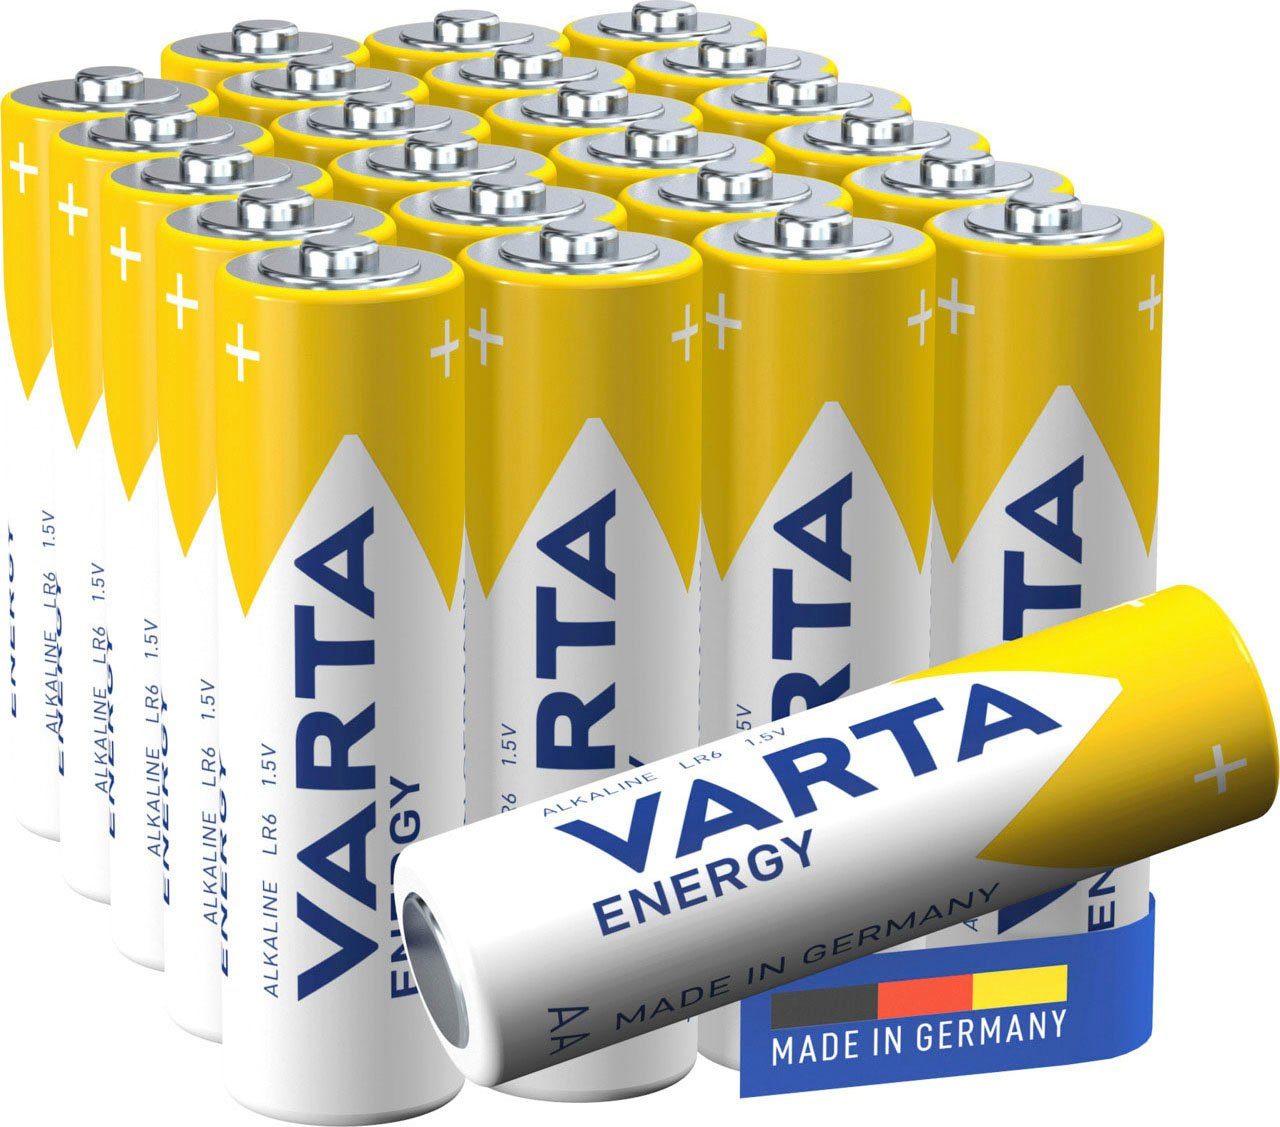 VARTA 24 Stck. Energy AA Mignon LR6 Batterie, LR06 (24 St), ideal für Spielzeug Taschenlampe und andere batteriebetriebene Geräte